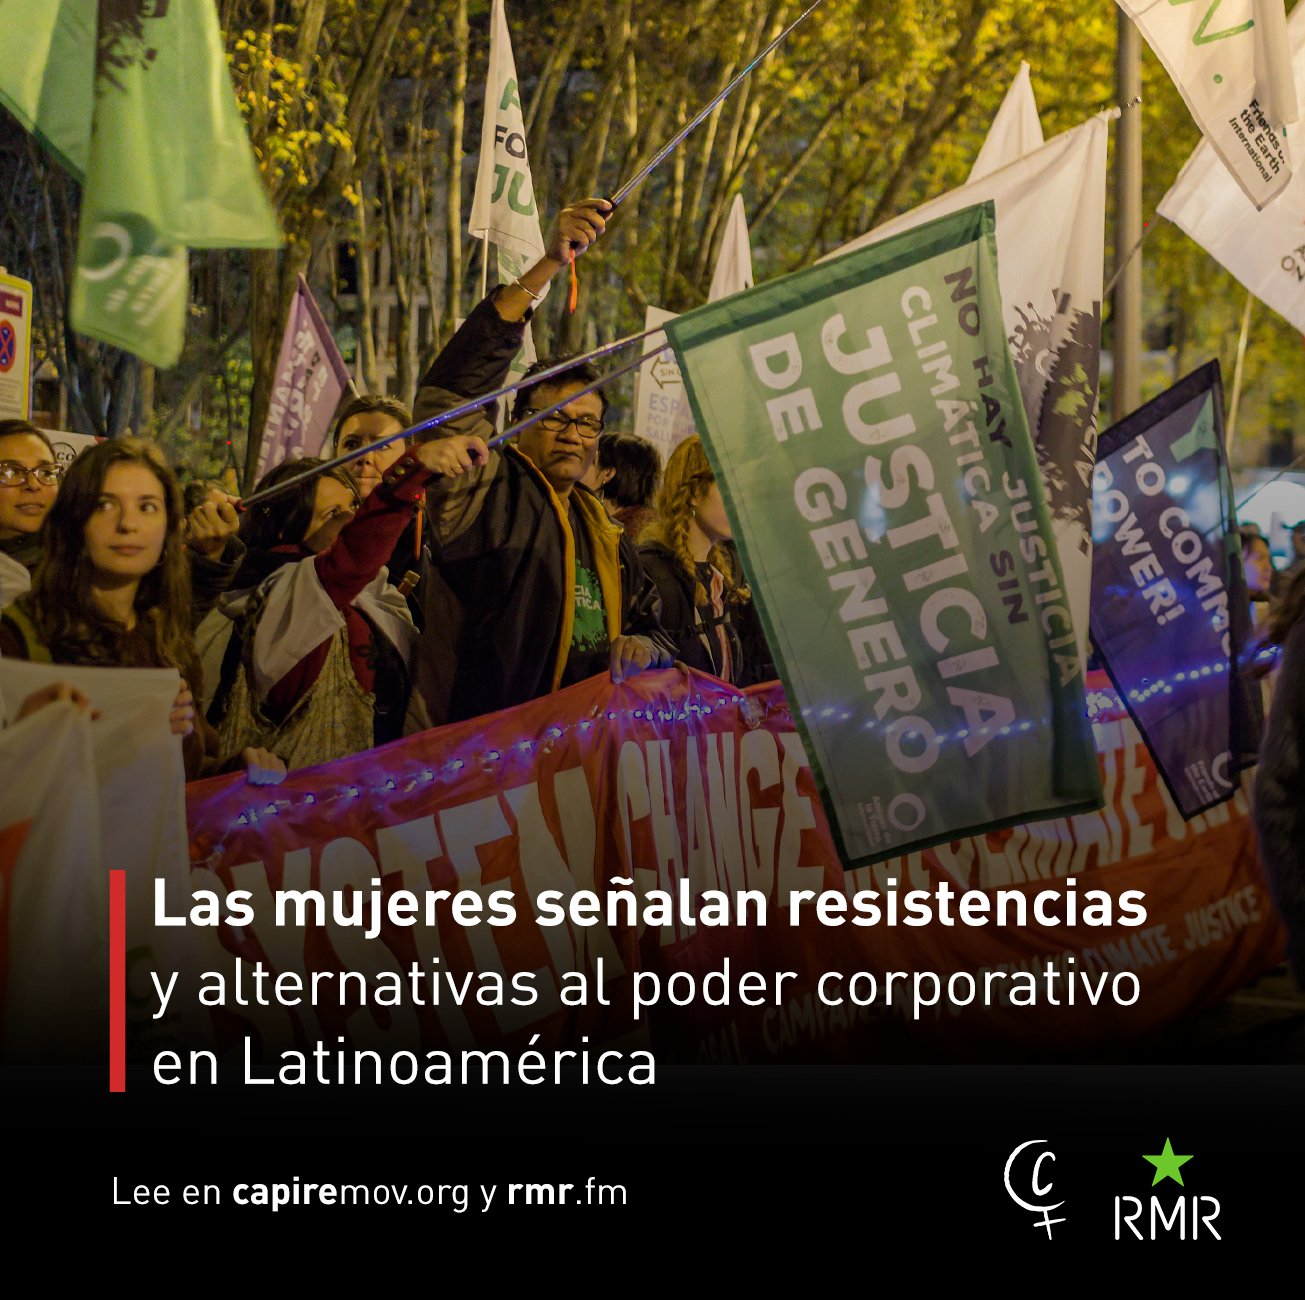 Las mujeres señalan resistencias y alternativas al poder corporativo en Latinoamérica